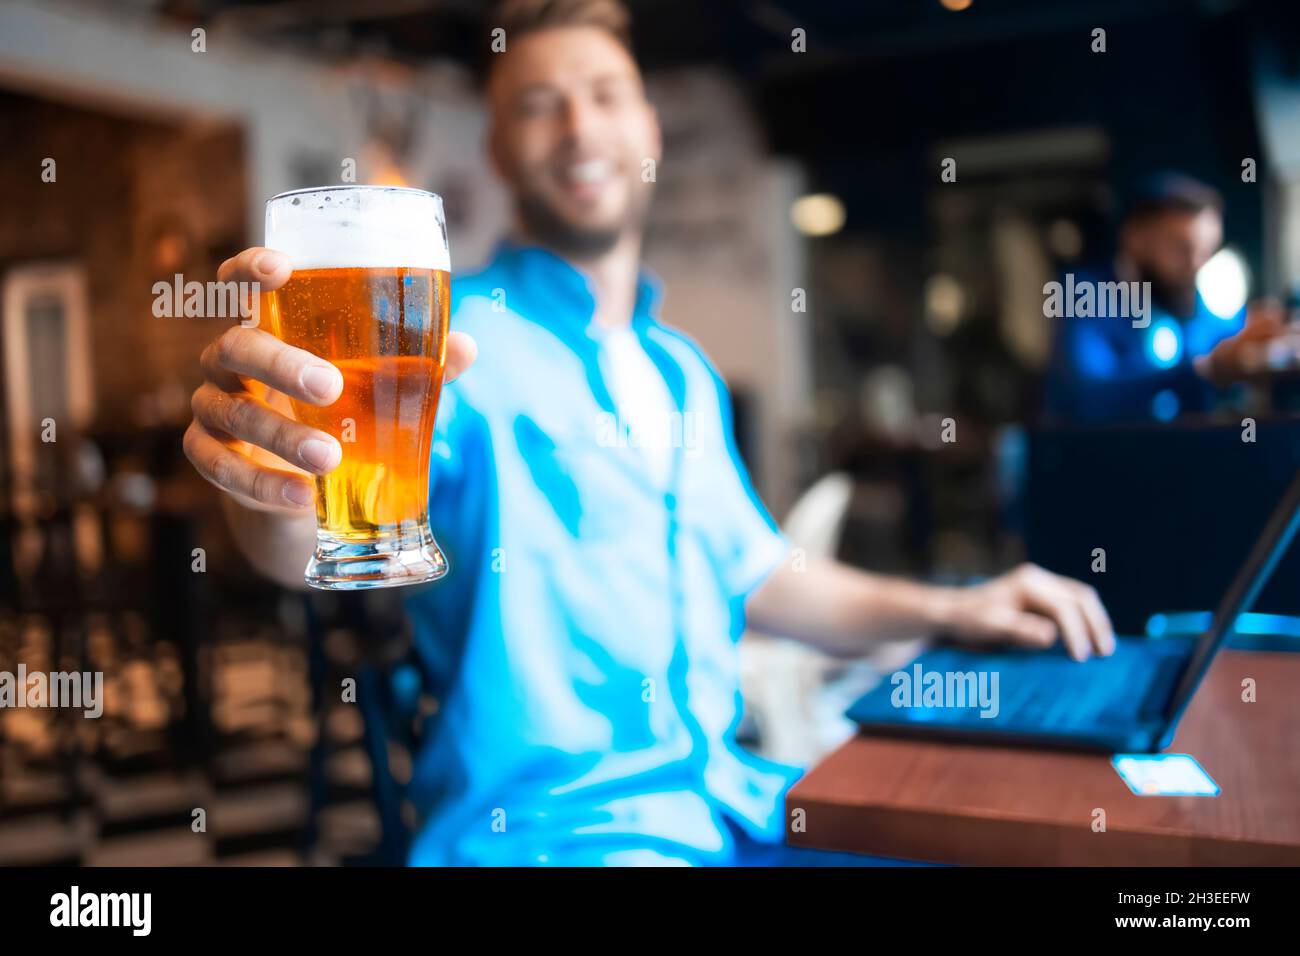 Un homme tenant un verre rafraîchissant de bière Banque D'Images